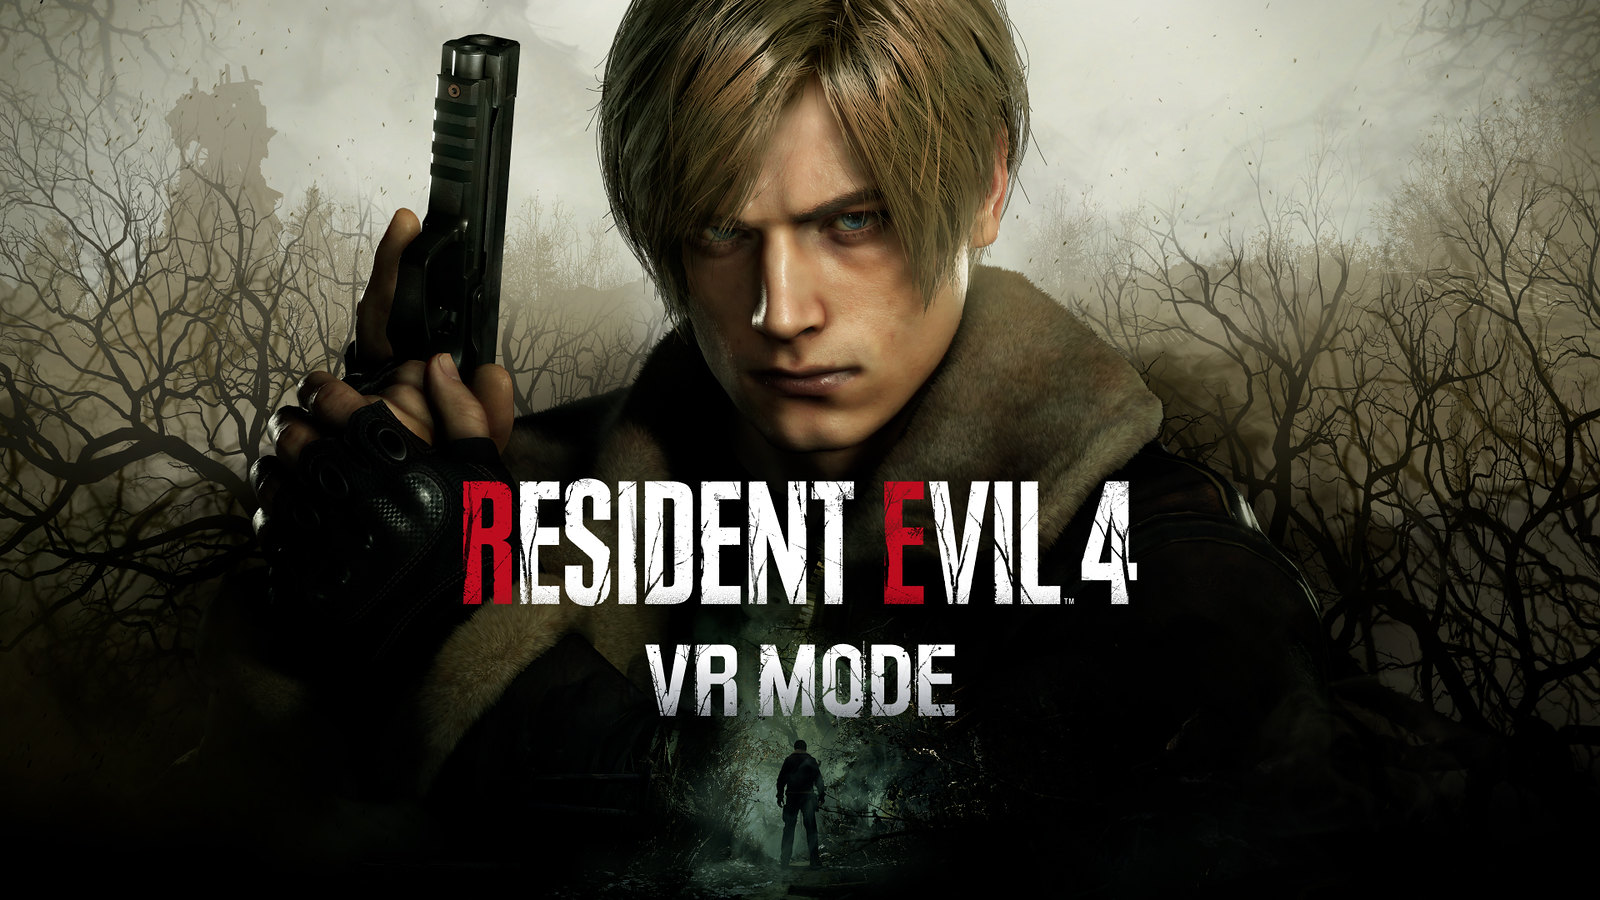 Leon Kennedy se encuentra en el centro de la imagen, mirando a la cámara y rodeado por una misteriosa zona boscosa. El texto dice: Resident Evil 4 VR Mode.